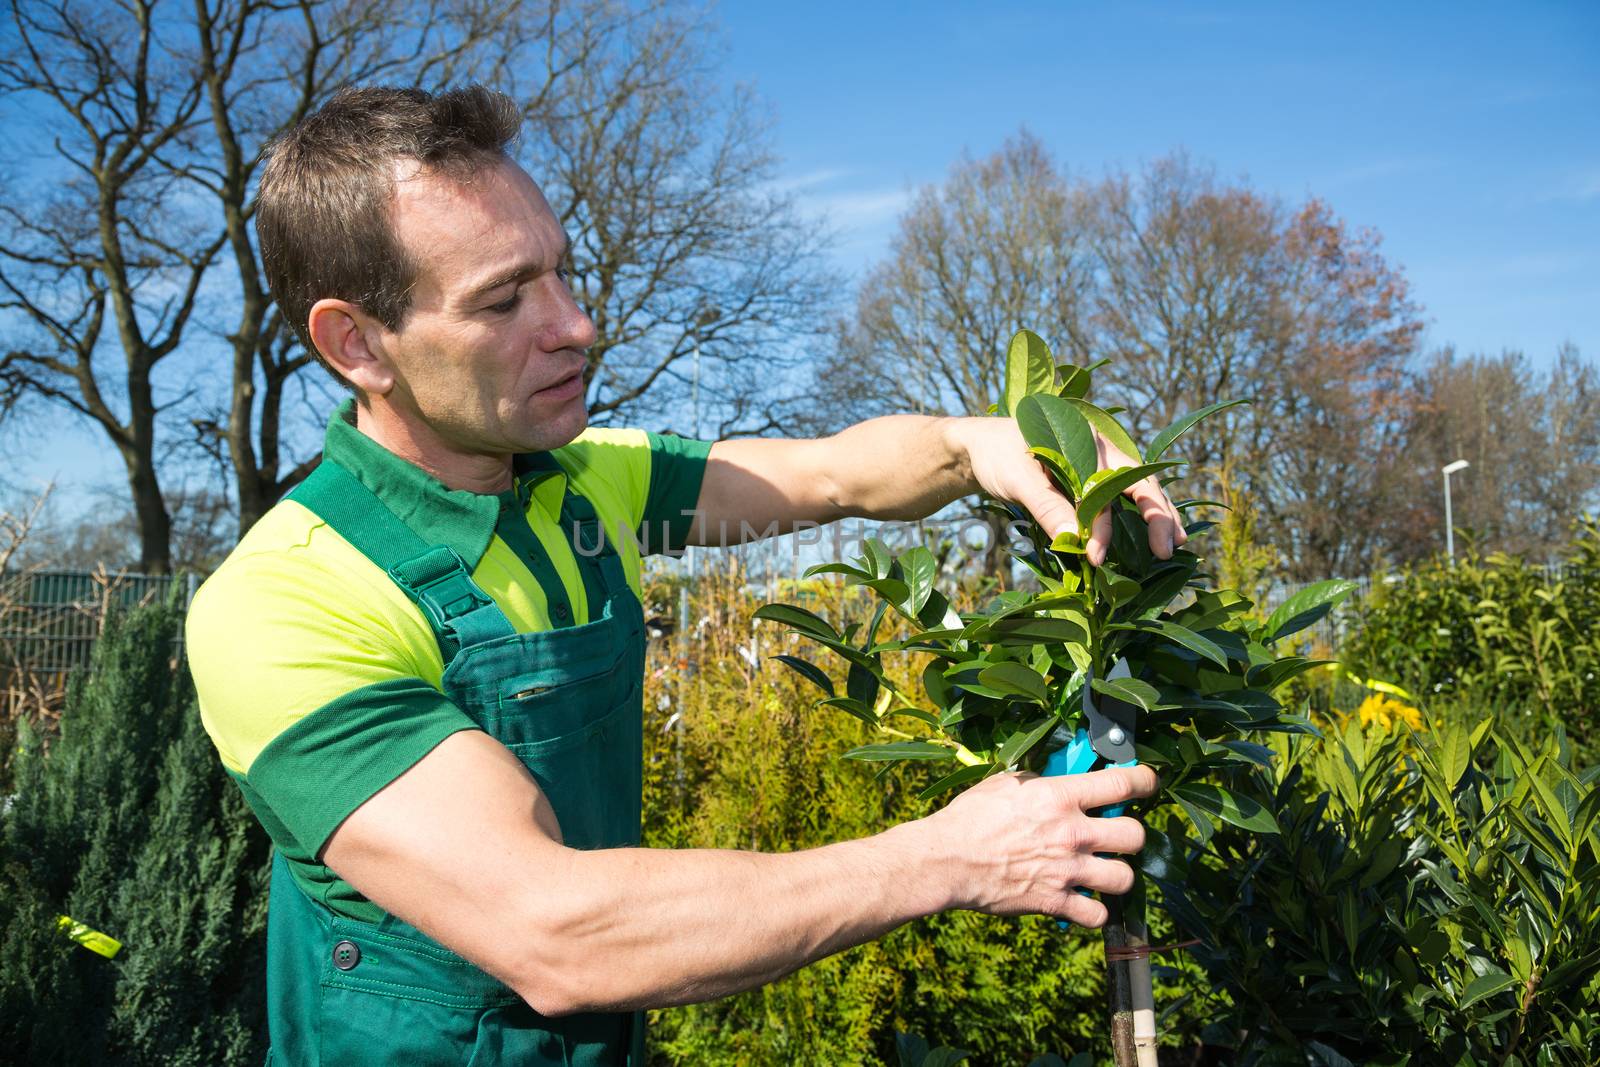 Gardener pruning a tree or plant in nursery